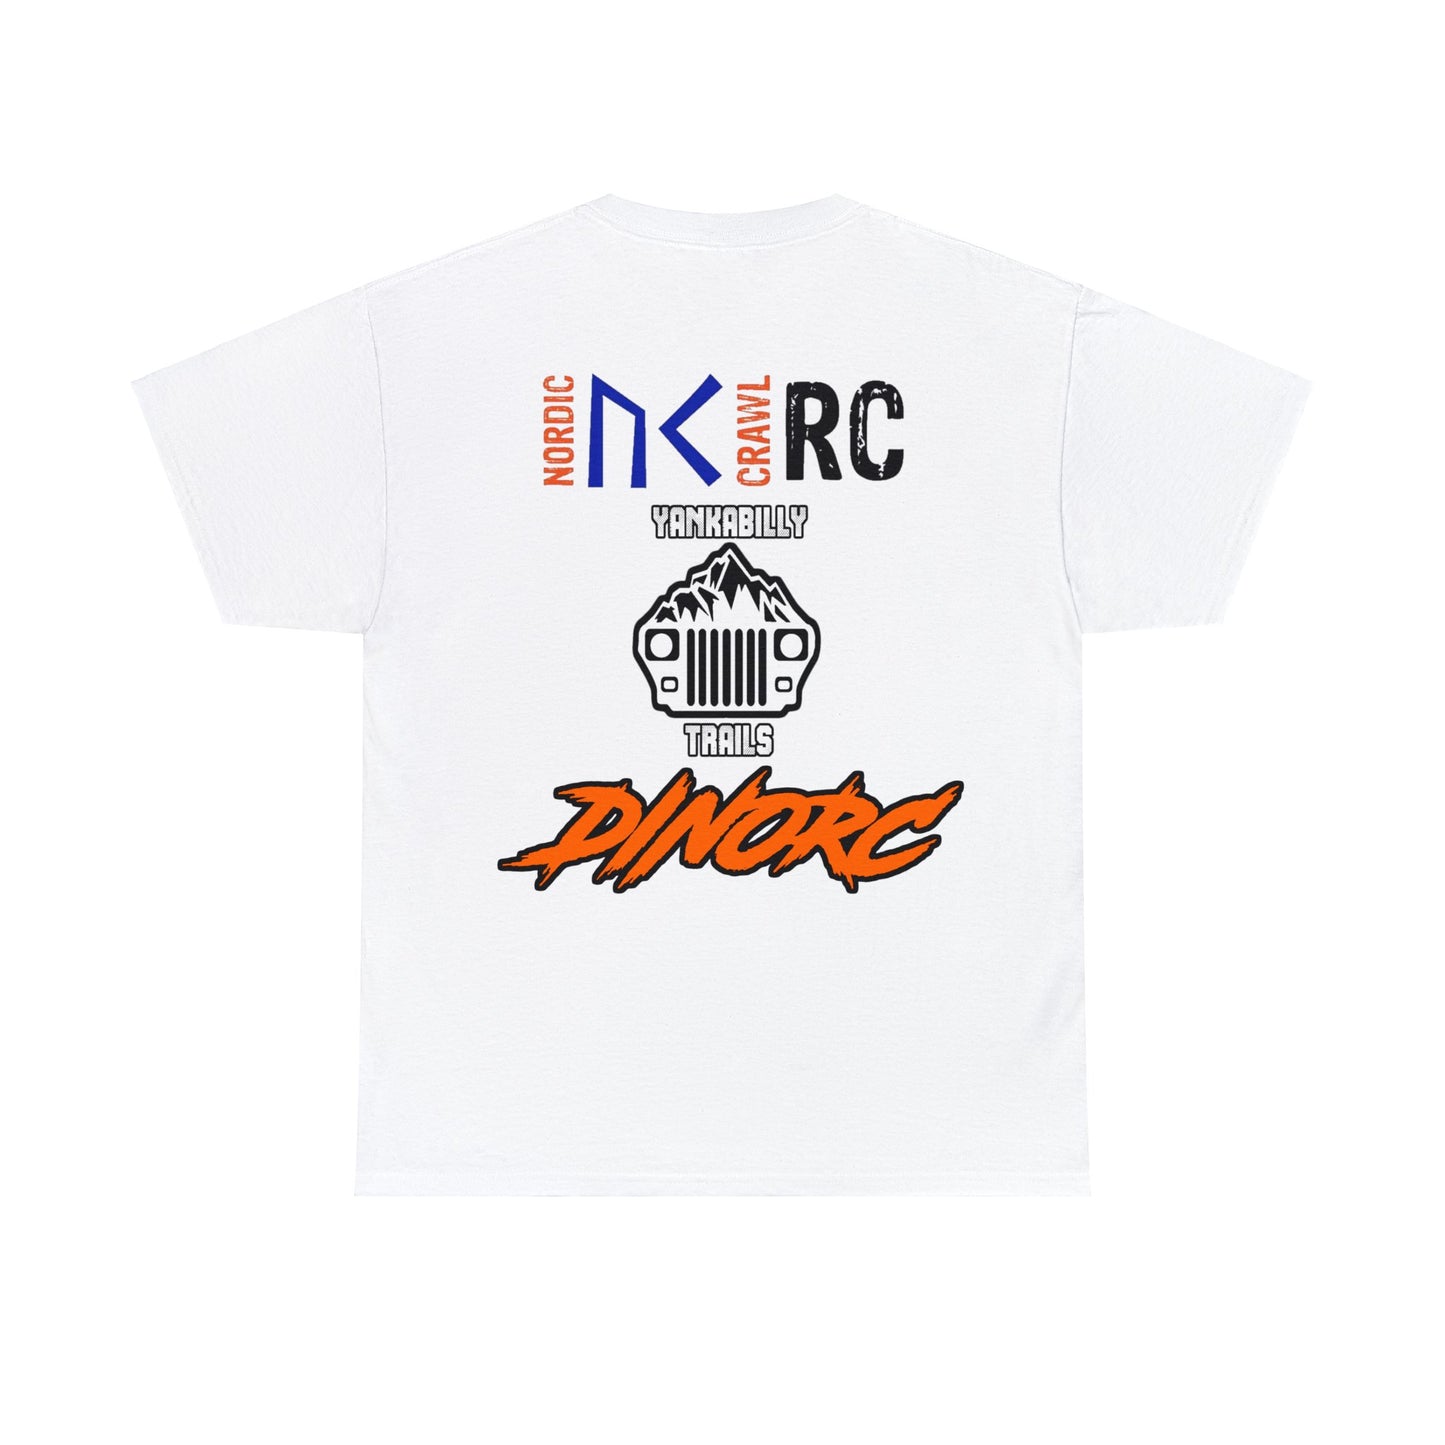 Pop's Shop RC  Logo T-Shirt S-5x